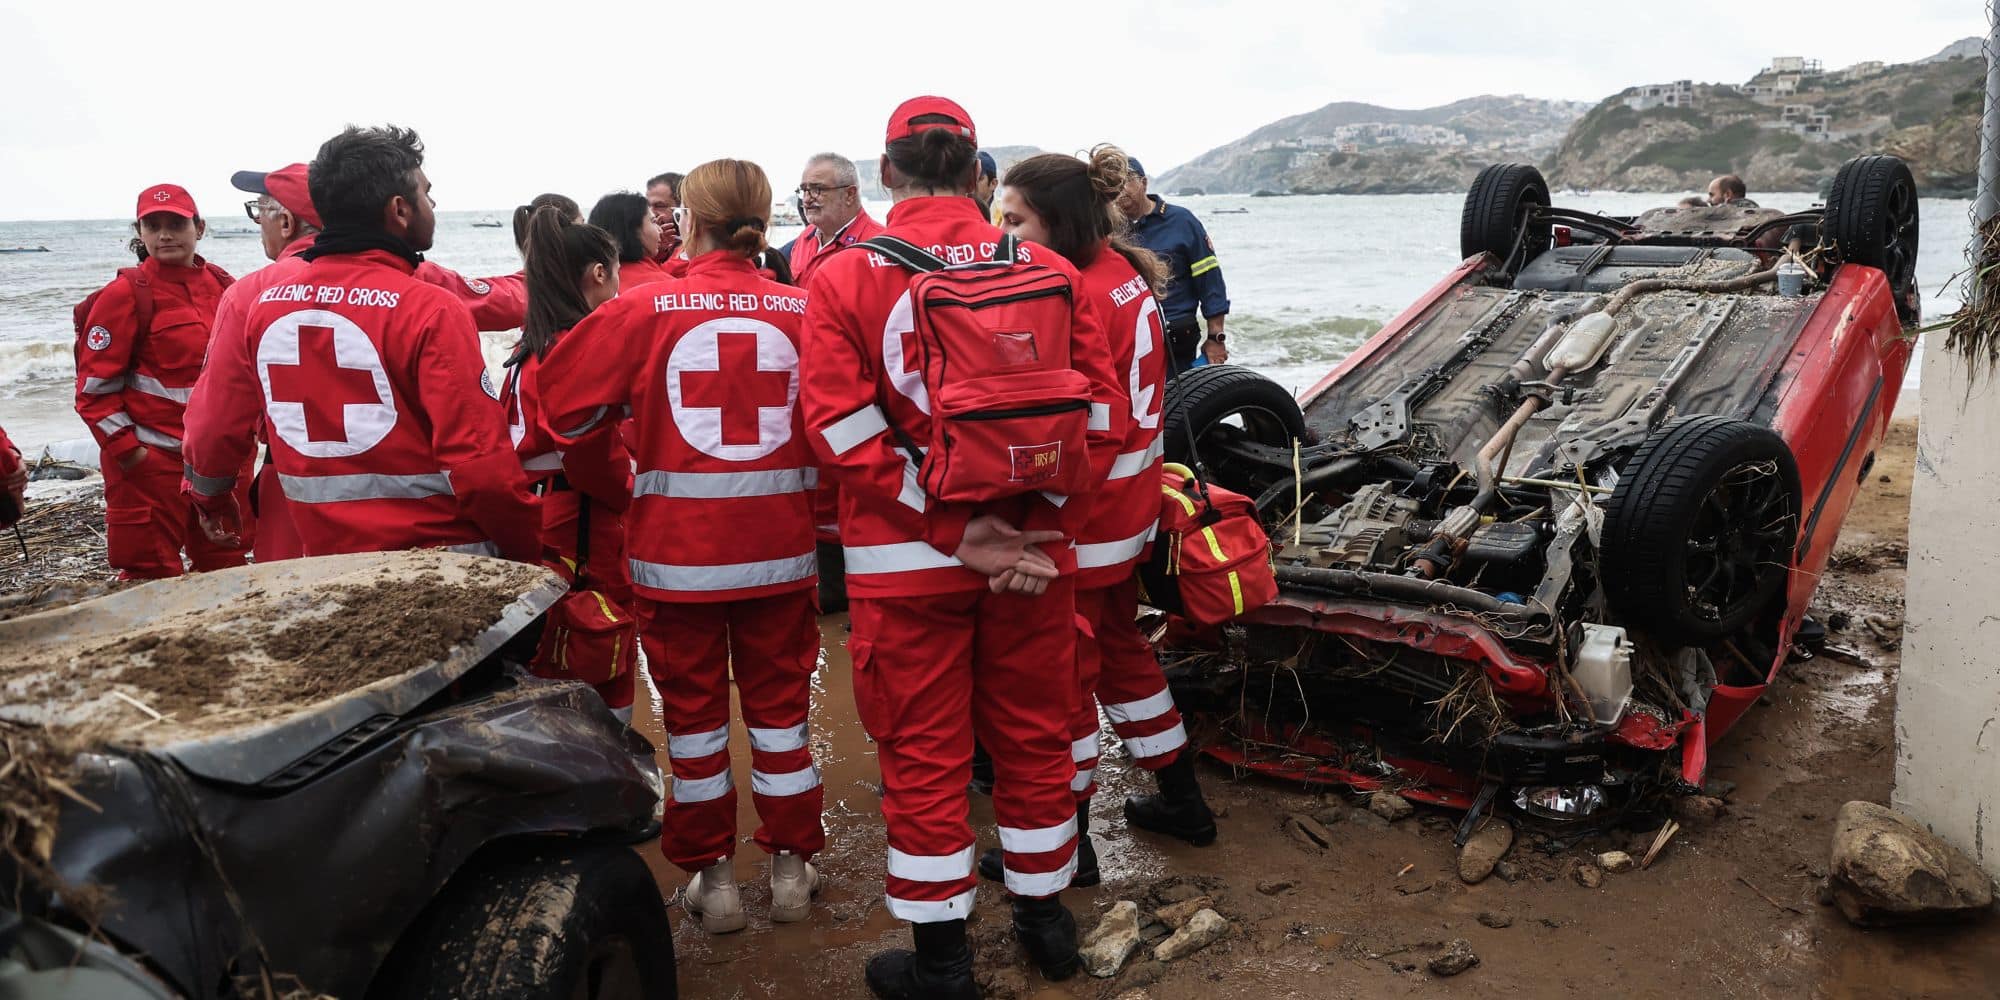 kakokairia kriti diaswste - Κακοκαιρία στην Κρήτη: Tραγωδία με 2 νεκρούς, σε σοκ ο σύζυγος της 49χρονης - Στις πληγείσες περιοχές κυβερνητικό κλιμάκιο